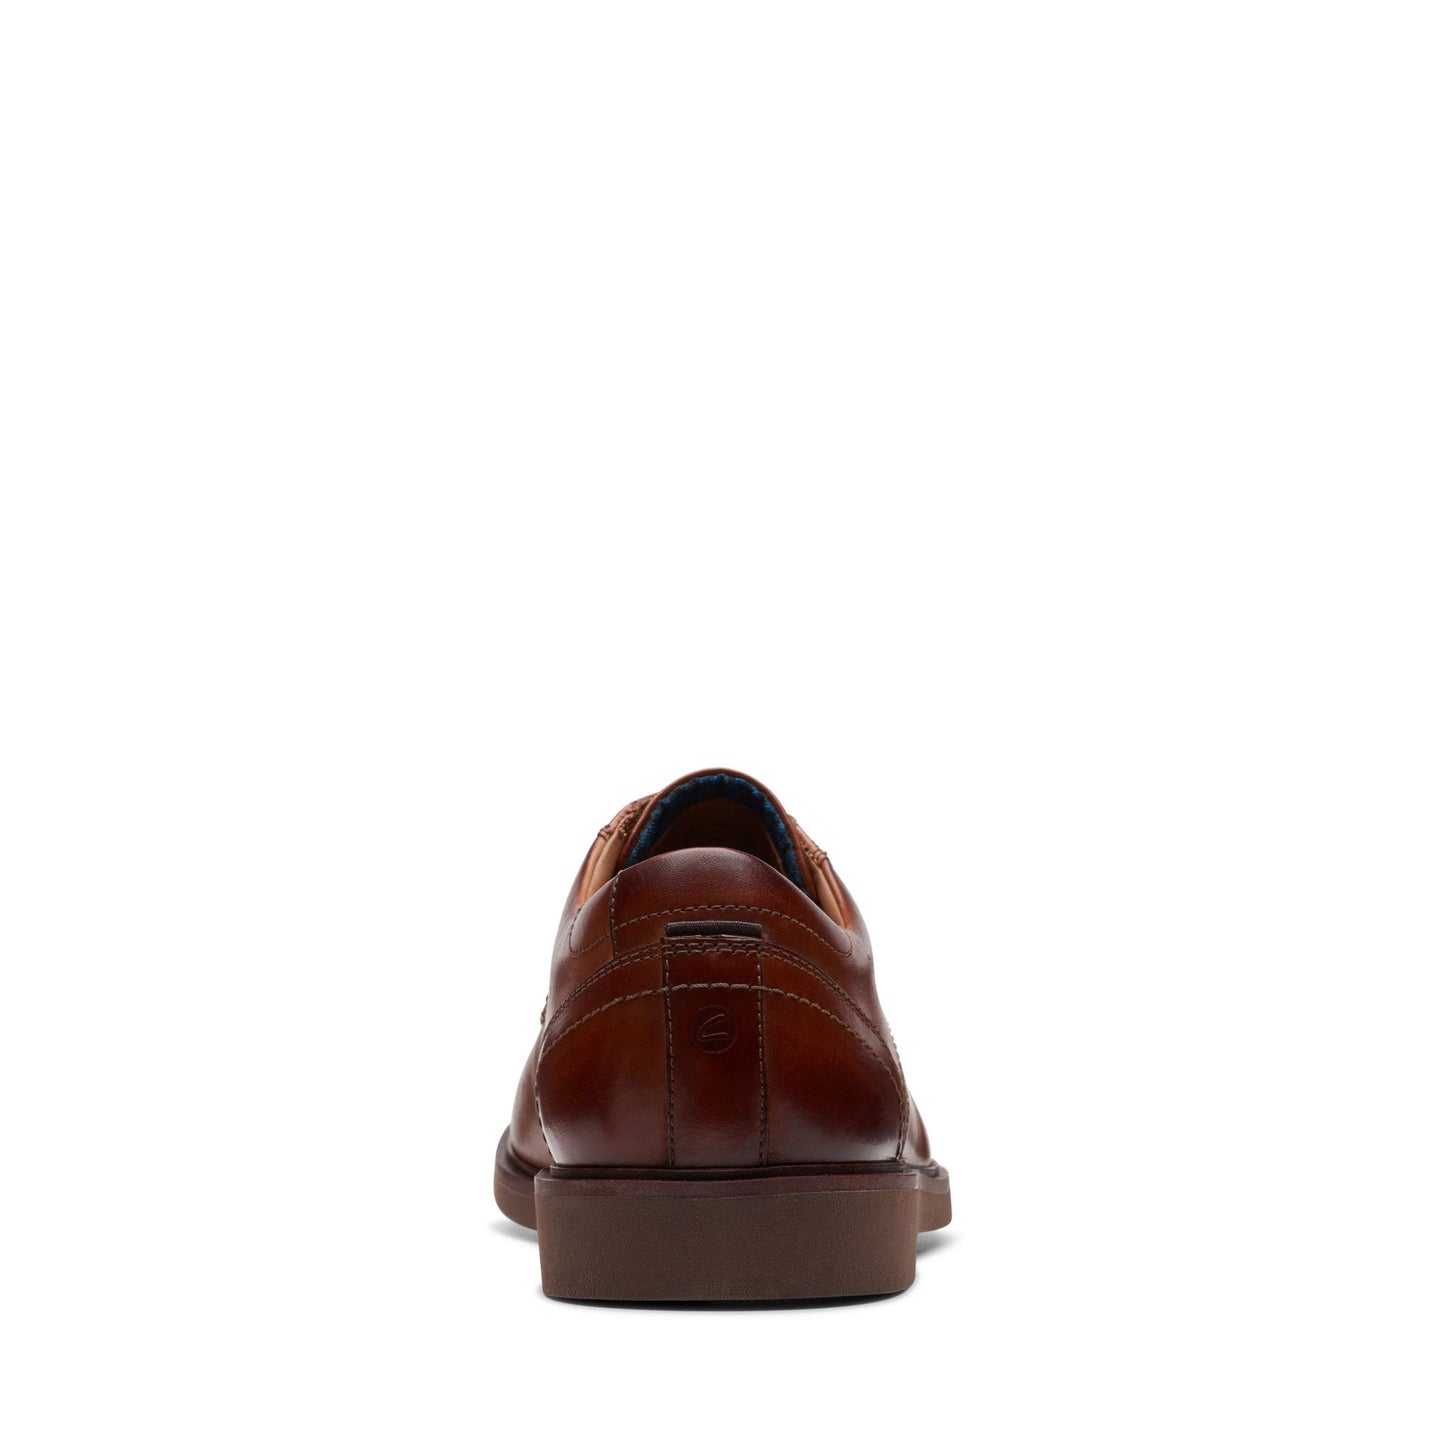 Zapatos Oxford De La Marca Clarks Para Hombre Modelo Malwood Lace Brown Leather En Color Marrón